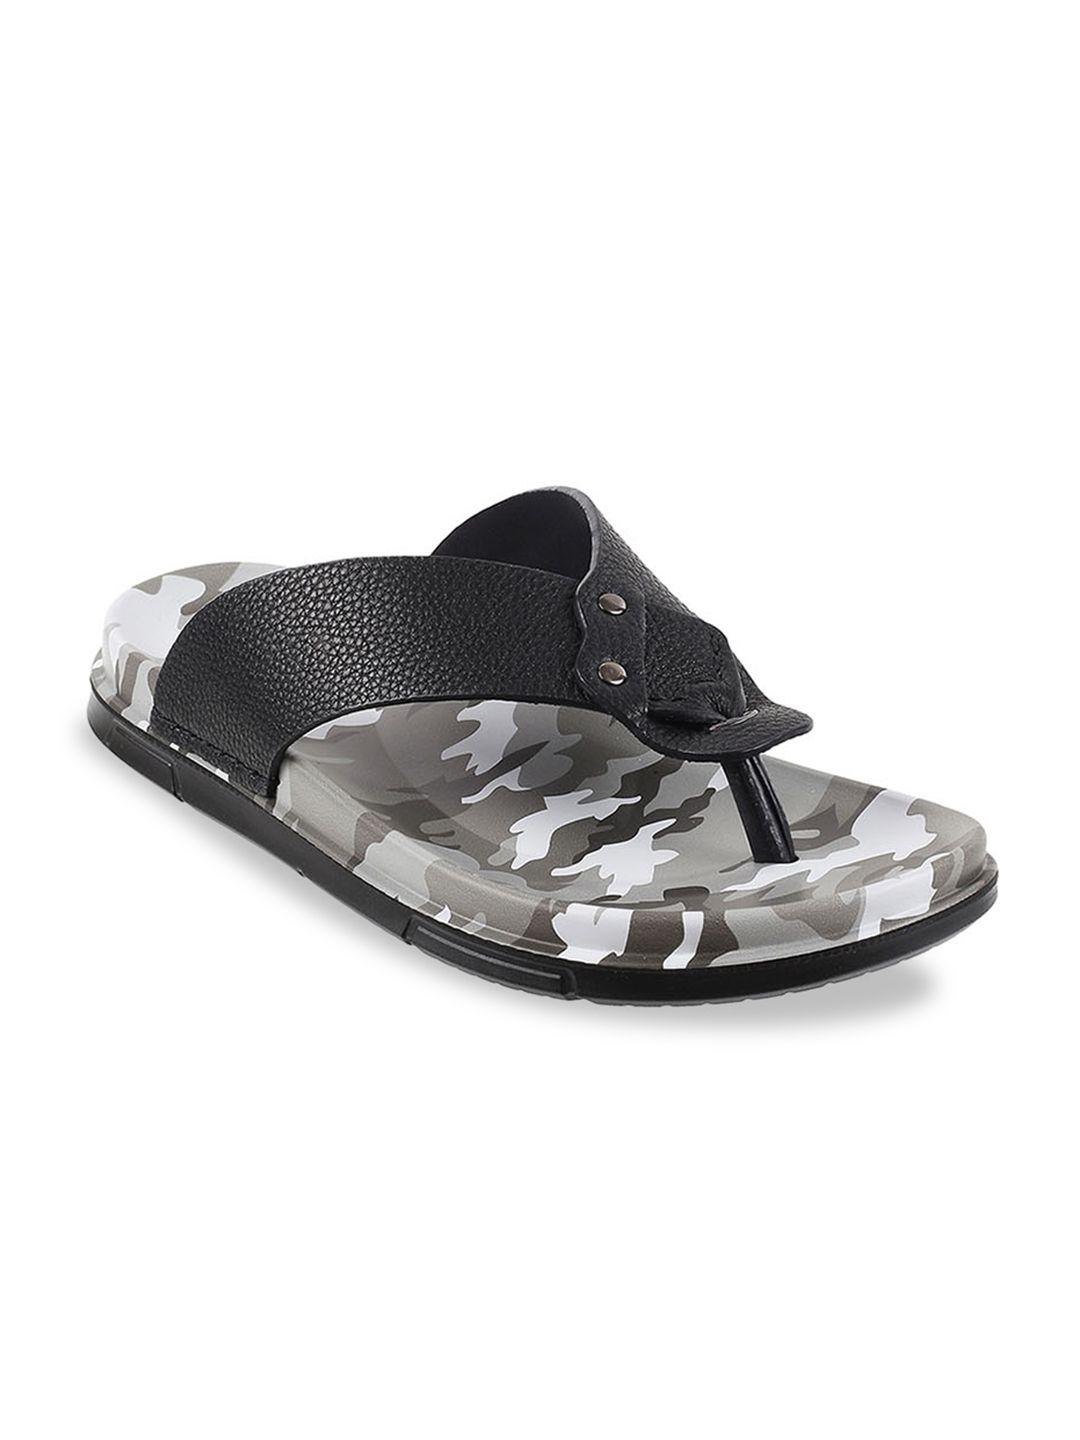 j.fontini men black & grey printed comfort sandals